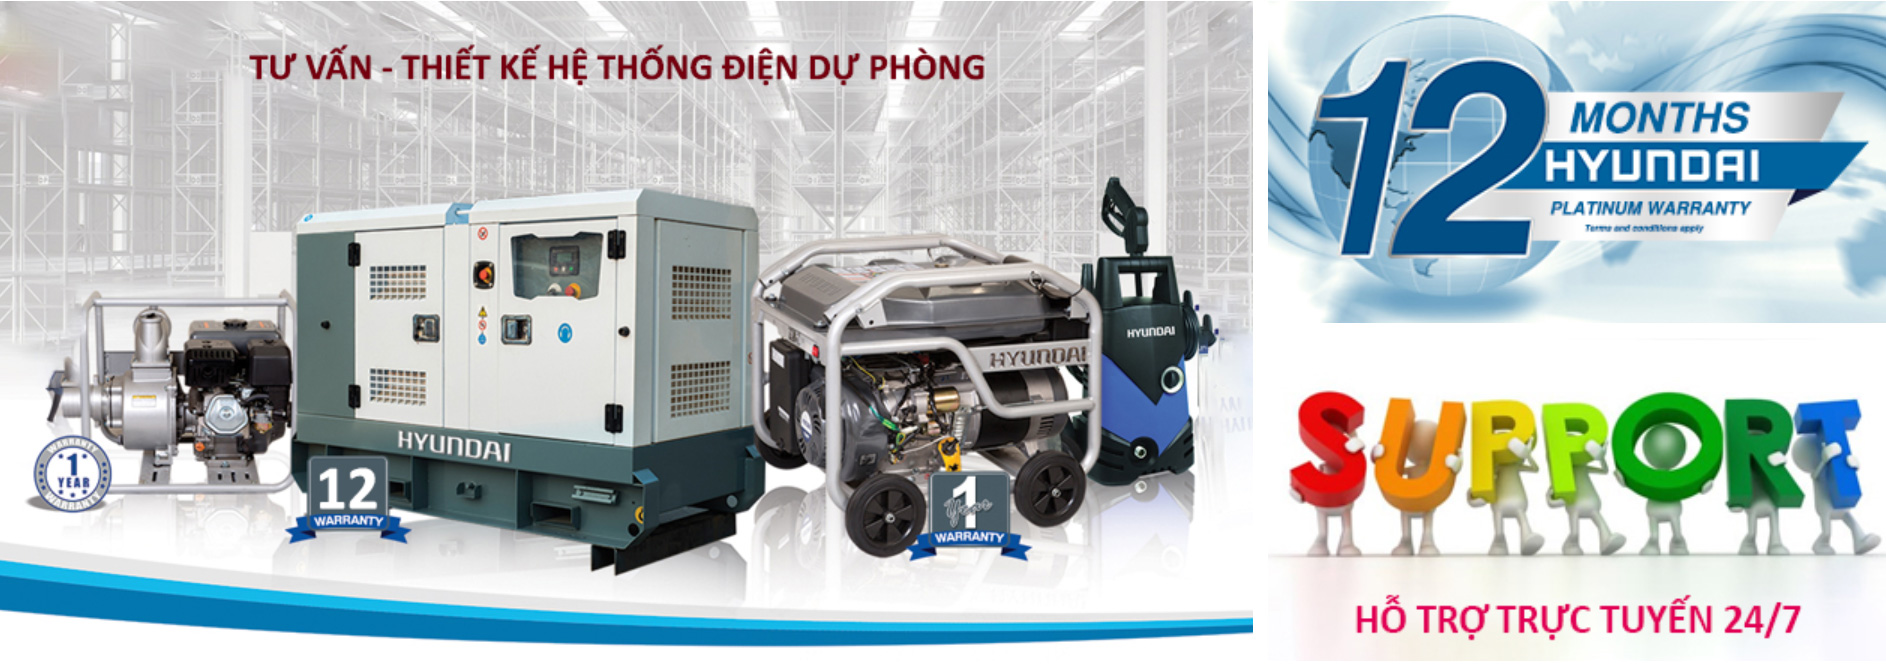 Công ty bán máy phát điện chính hãng tại tỉnh Hà Giang